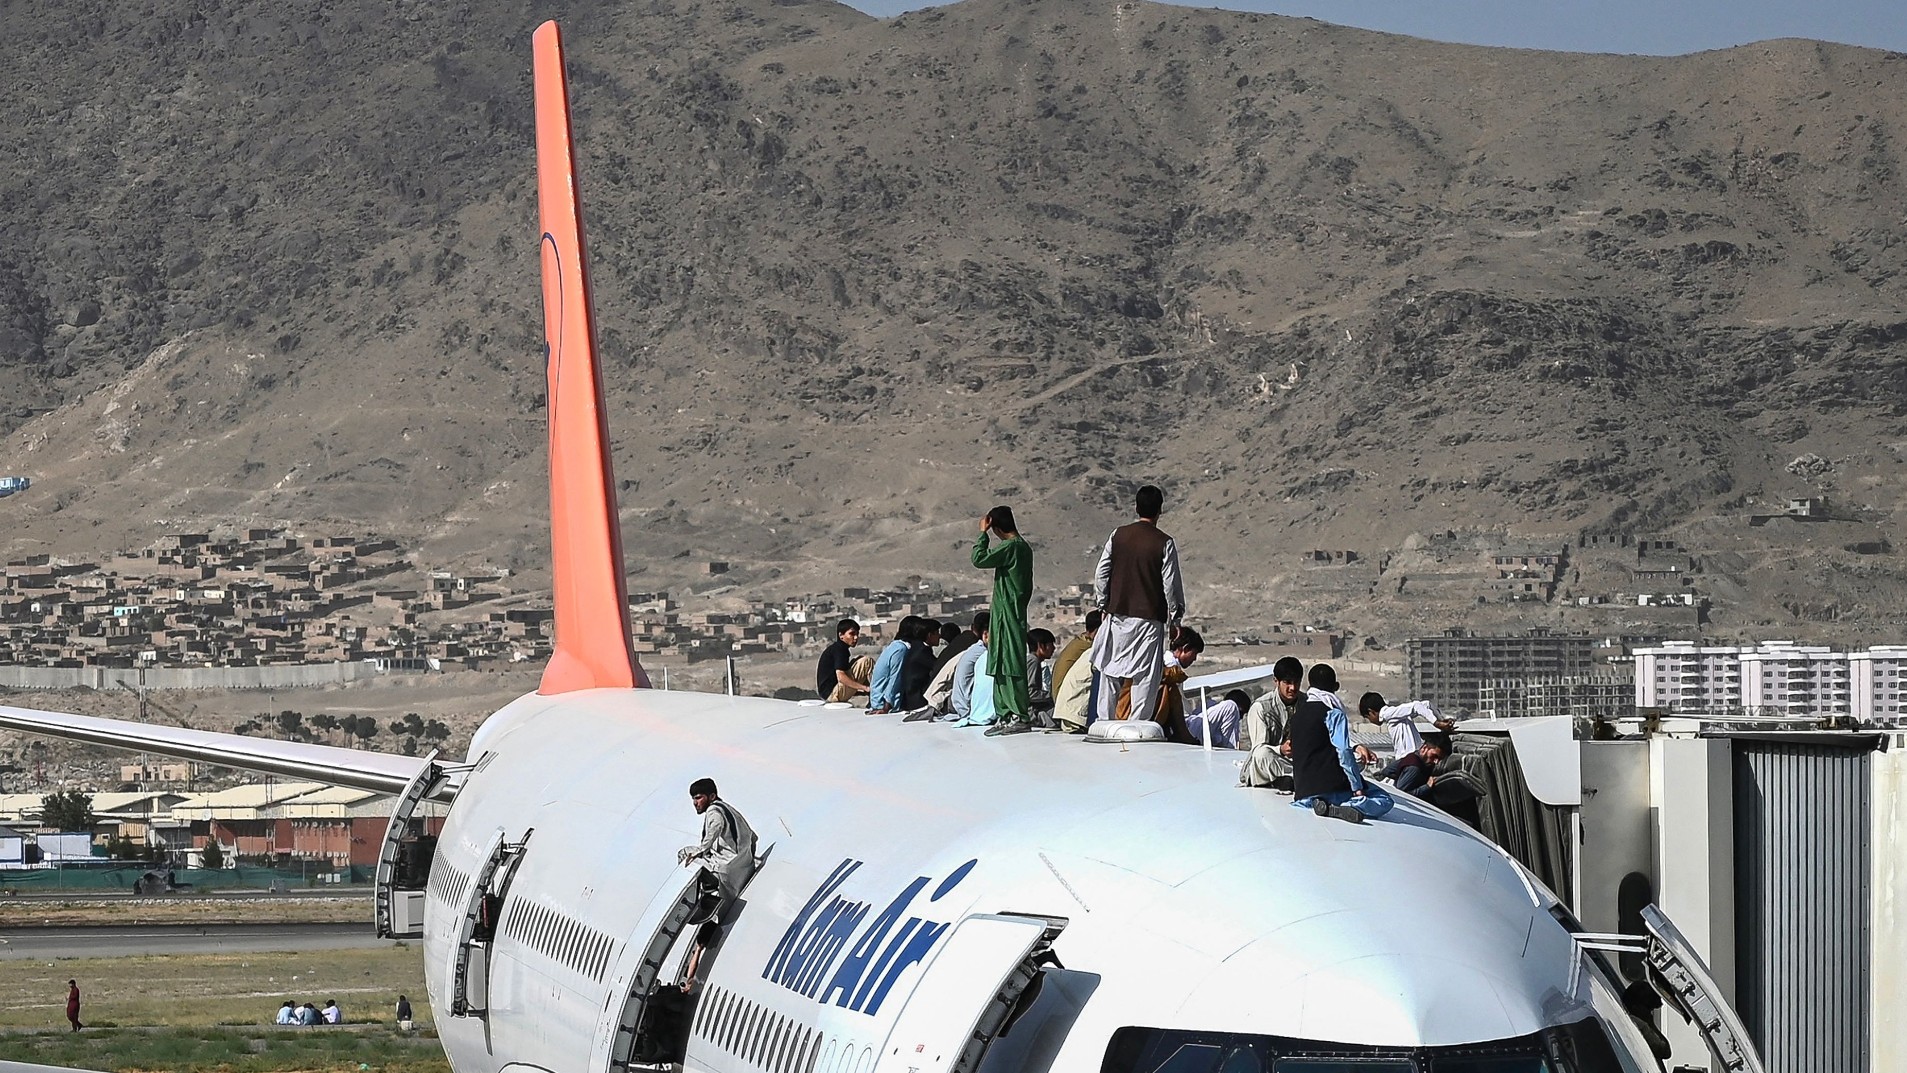 Kabul airport